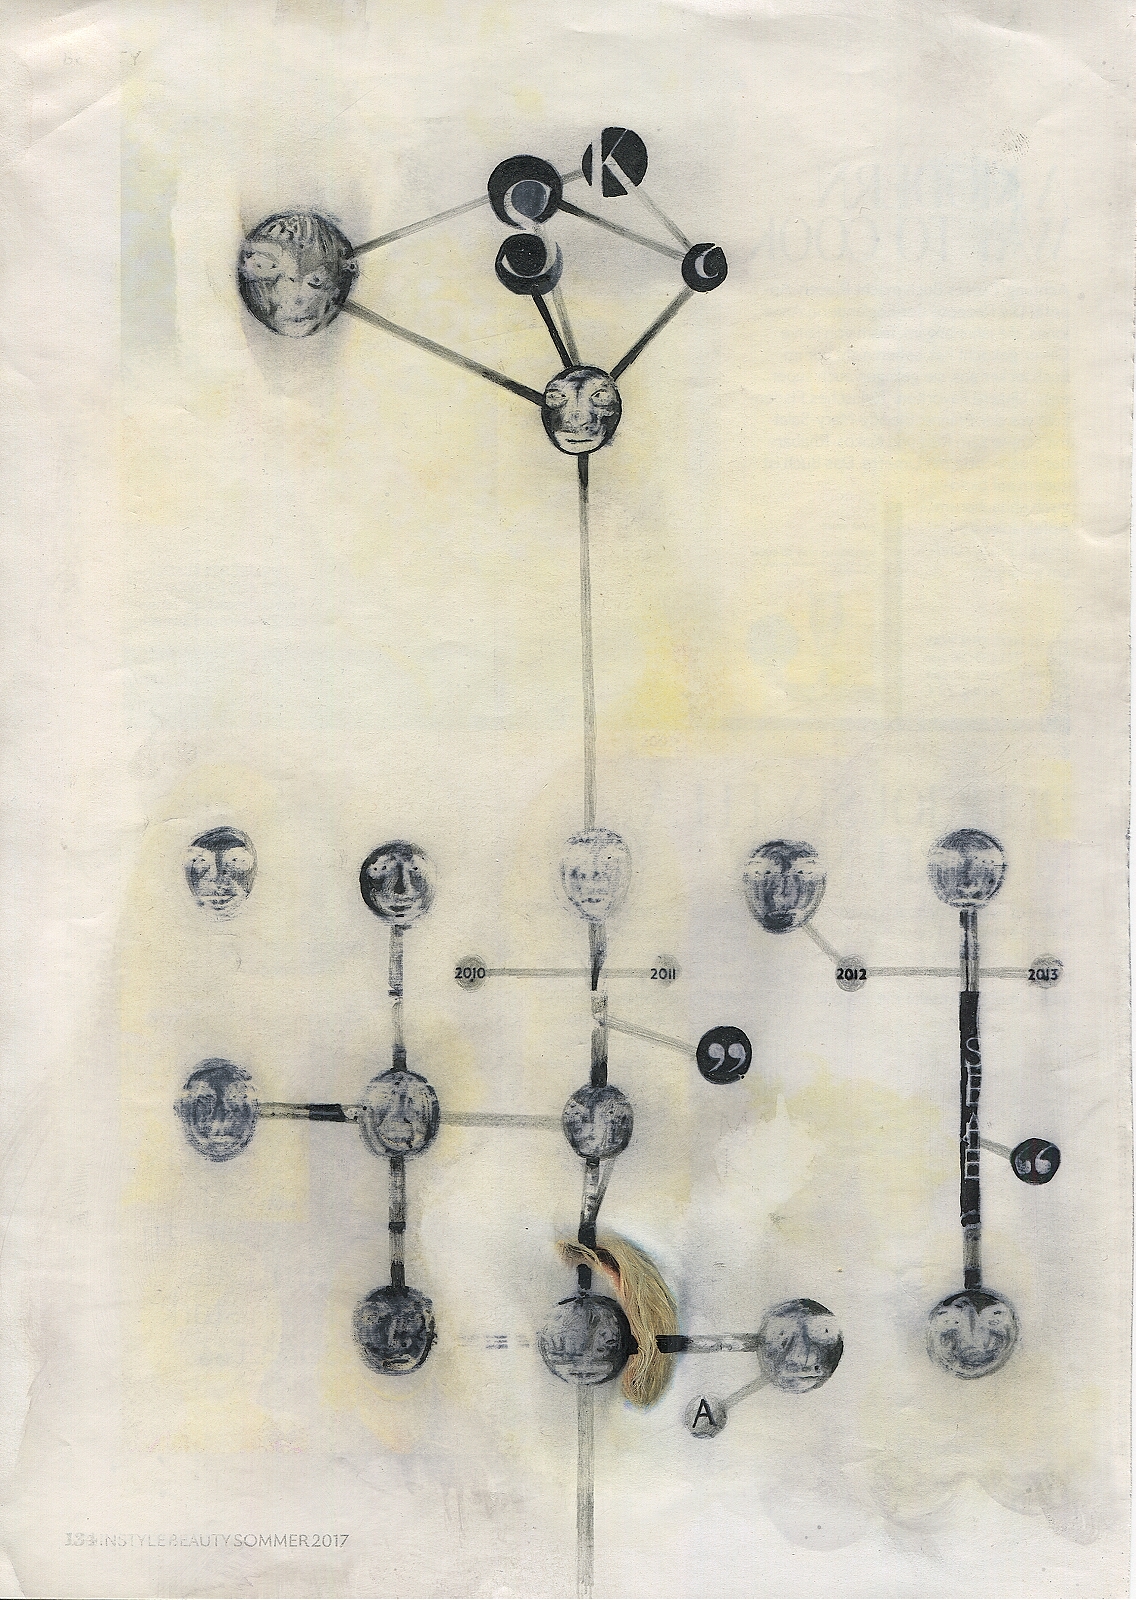 "Weak structure", 2018, lavender-oil, pencil, feltpen, on magazine page, 19.3 x 27.5 cm